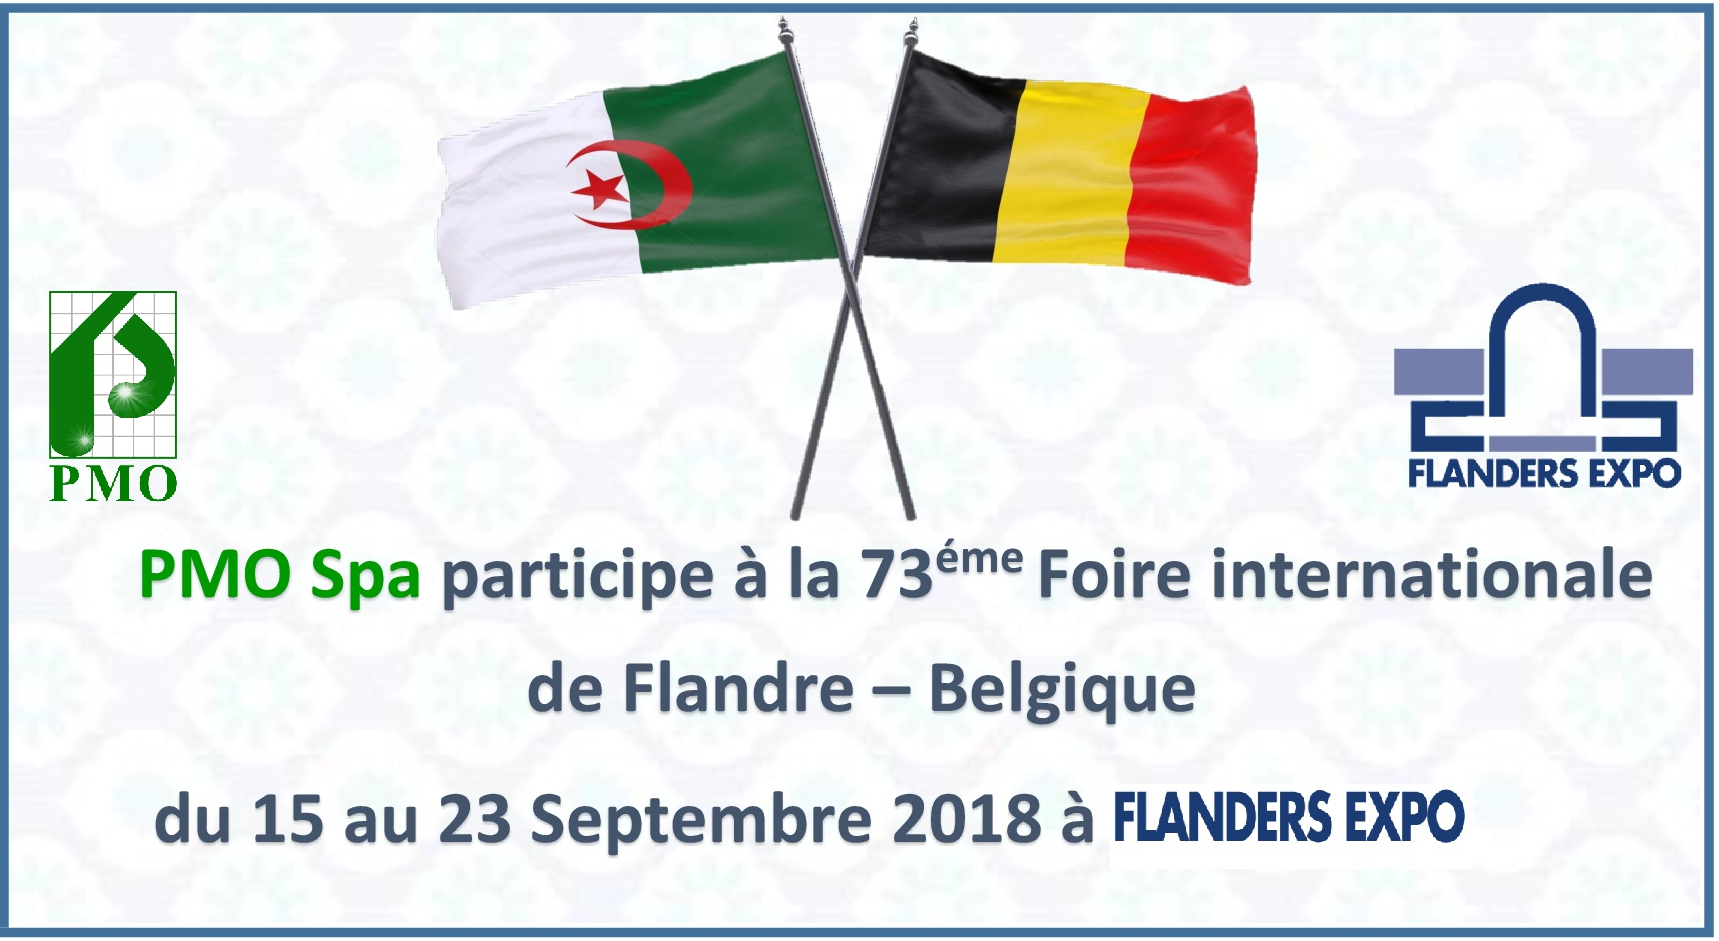 PMO 73éme Foire internationale de Flandre Belgique 